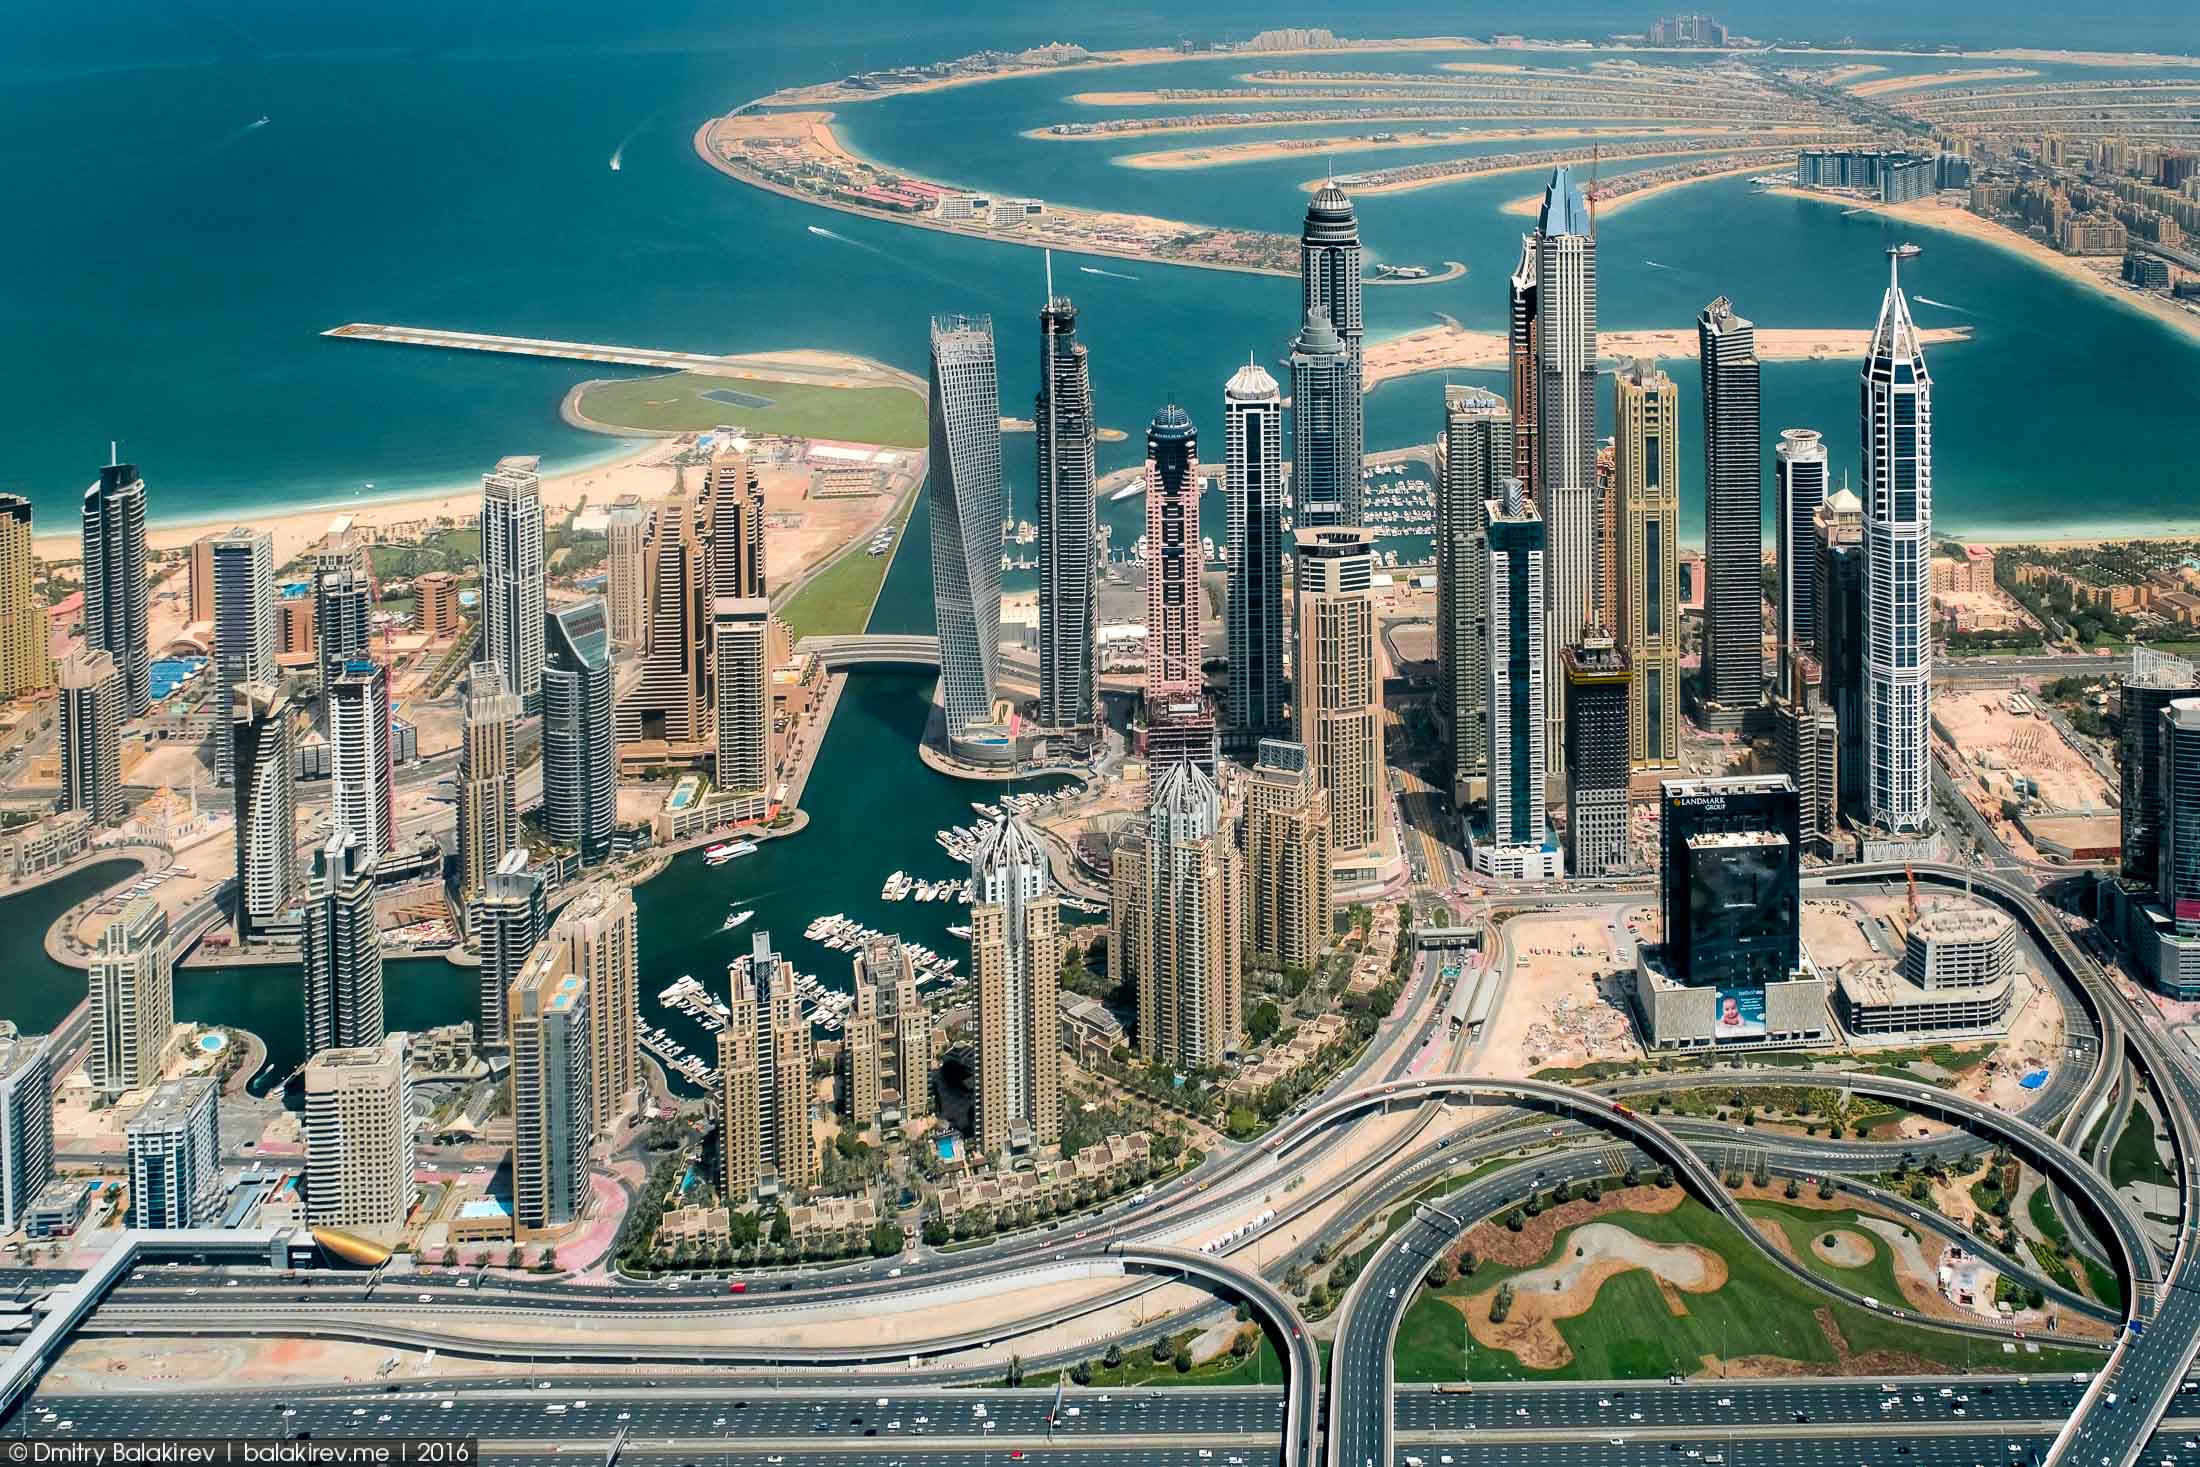 Туризм Дубая может рухнуть, как карточный домик, - эксперт